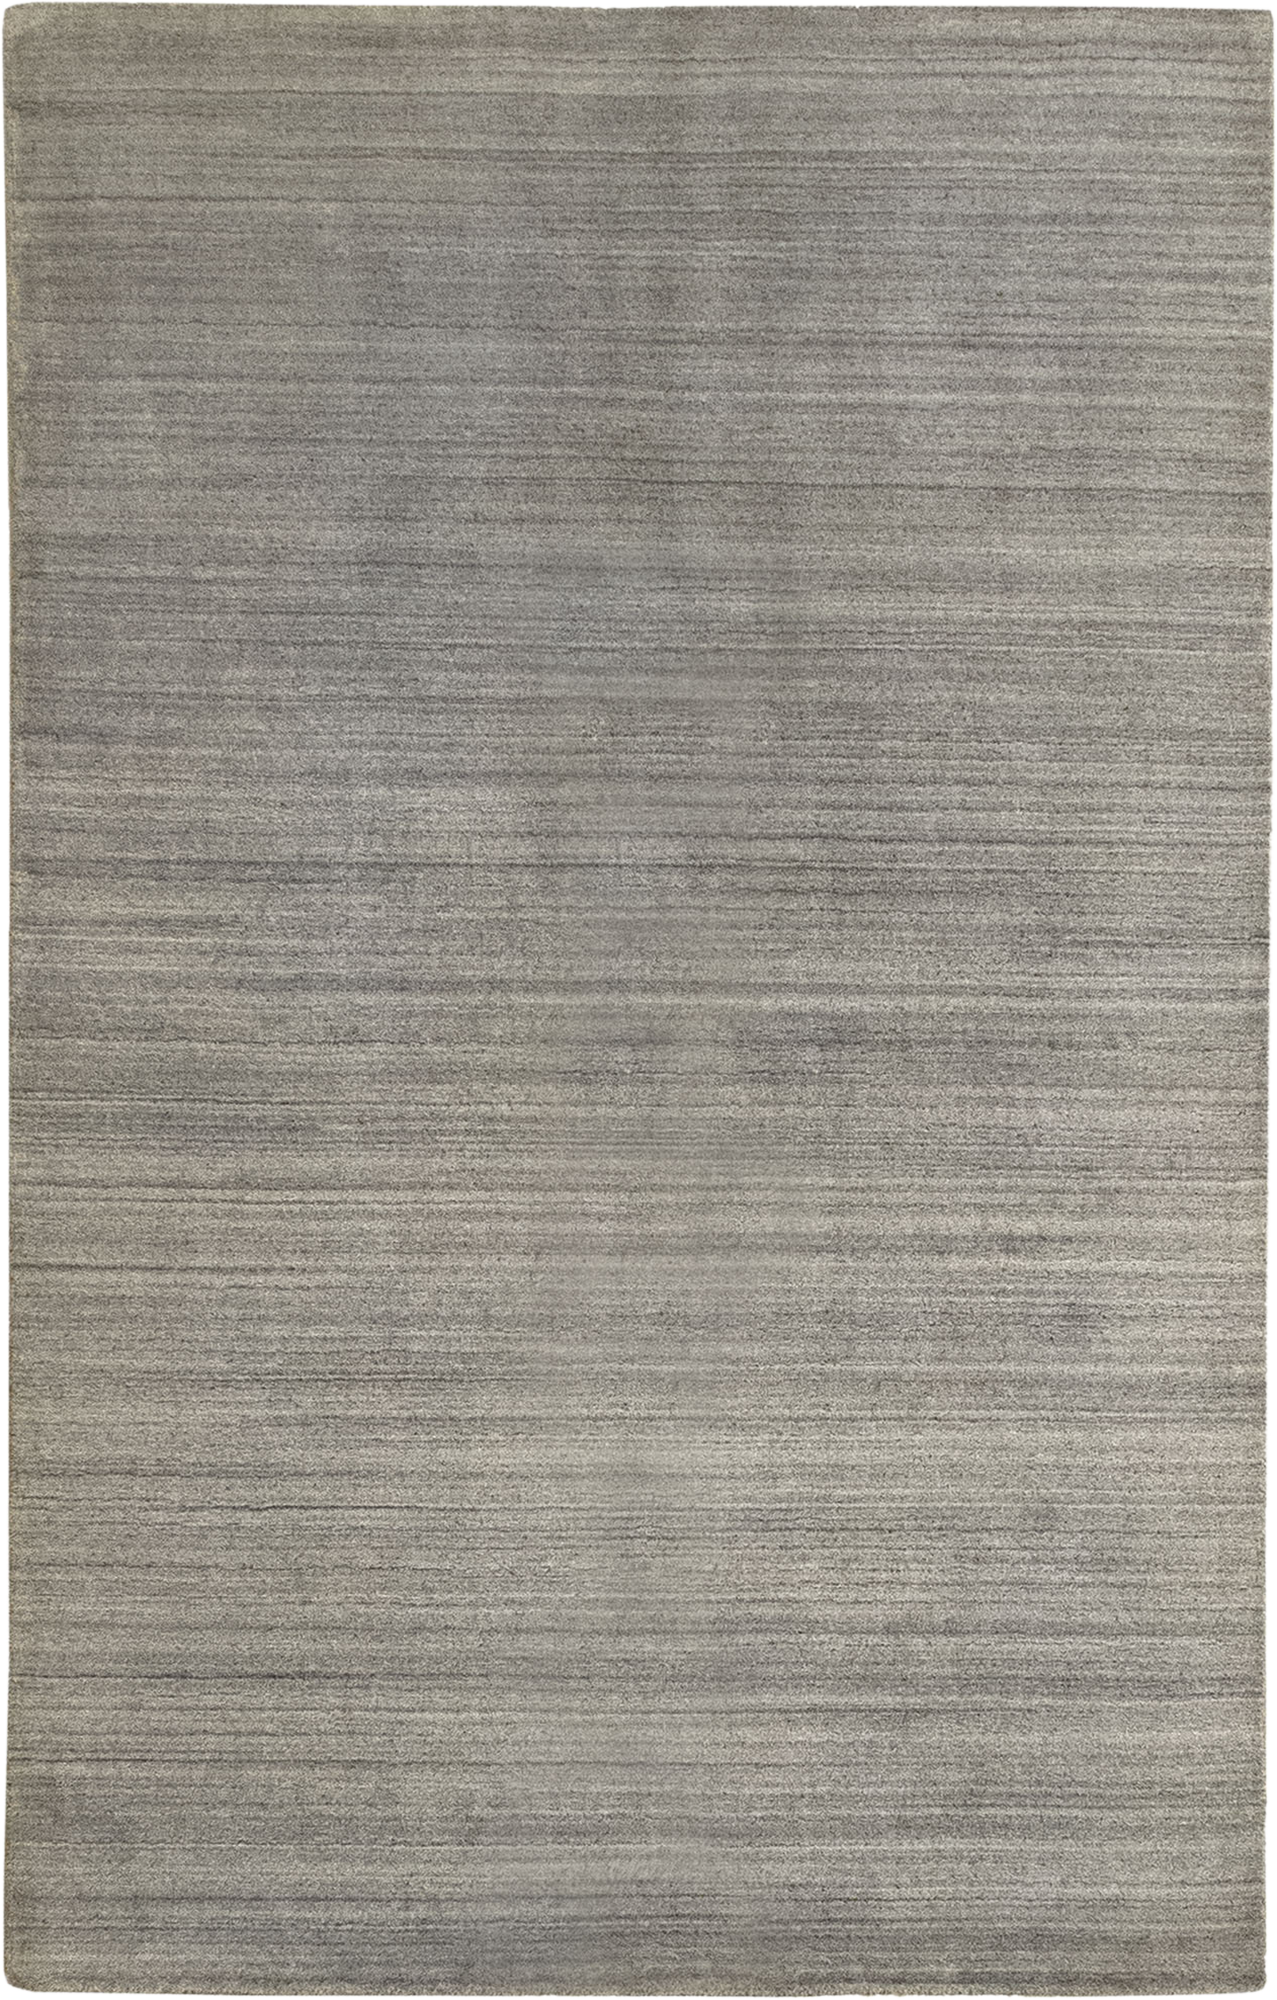 Alfombra lana kavir 2 gris 160x230cm